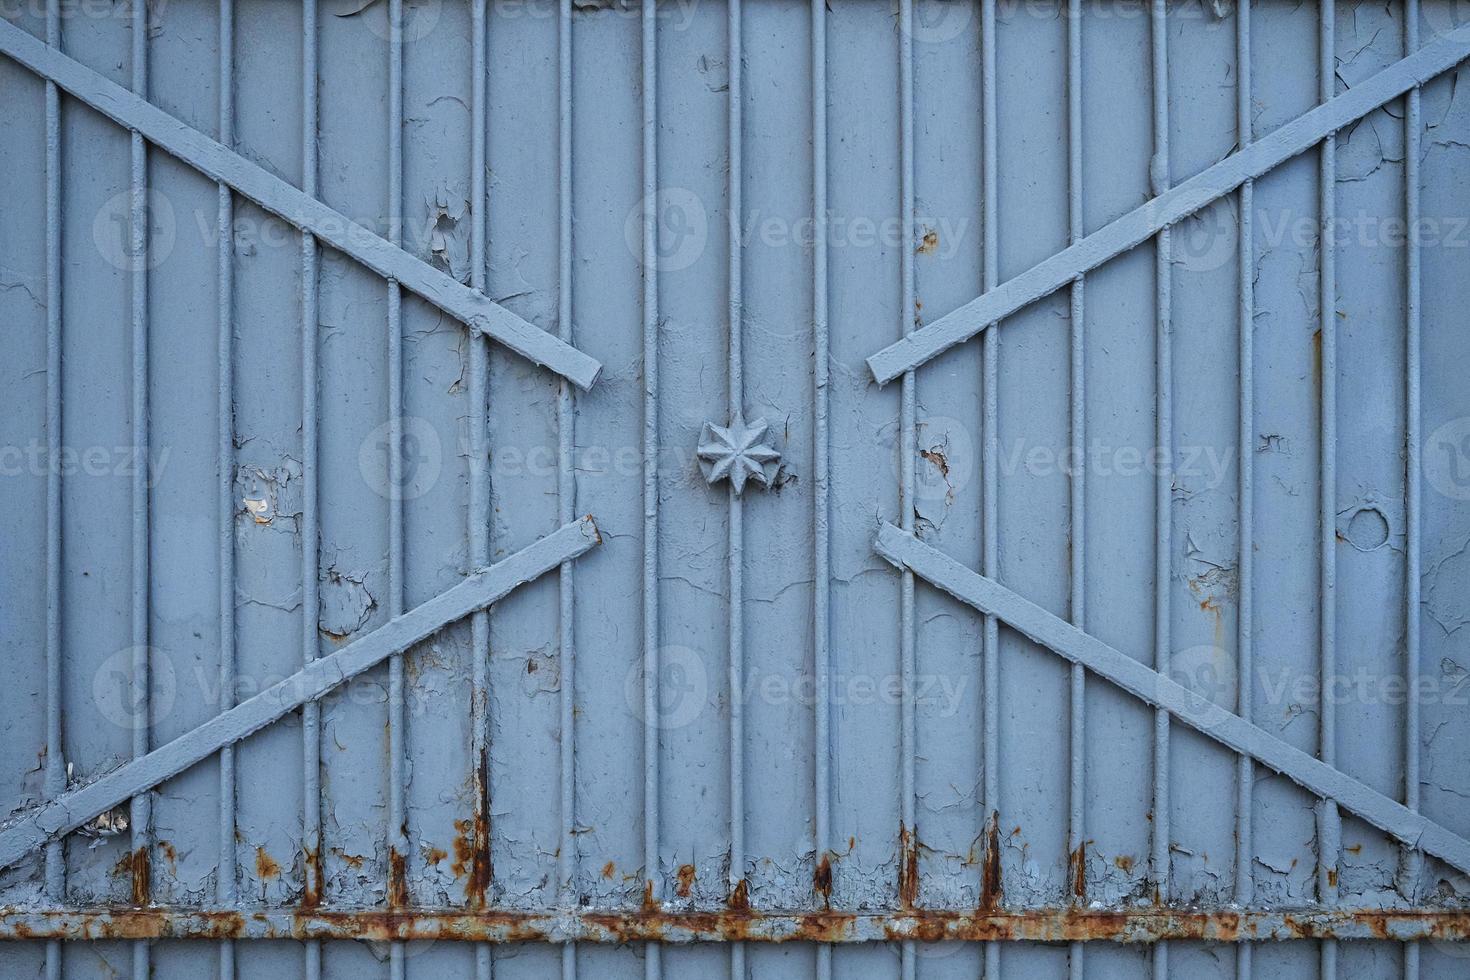 velhos portões de ferro enferrujados, cobertos de tinta e detritos, foto frontal. textura de porta de metal cinza da era soviética.